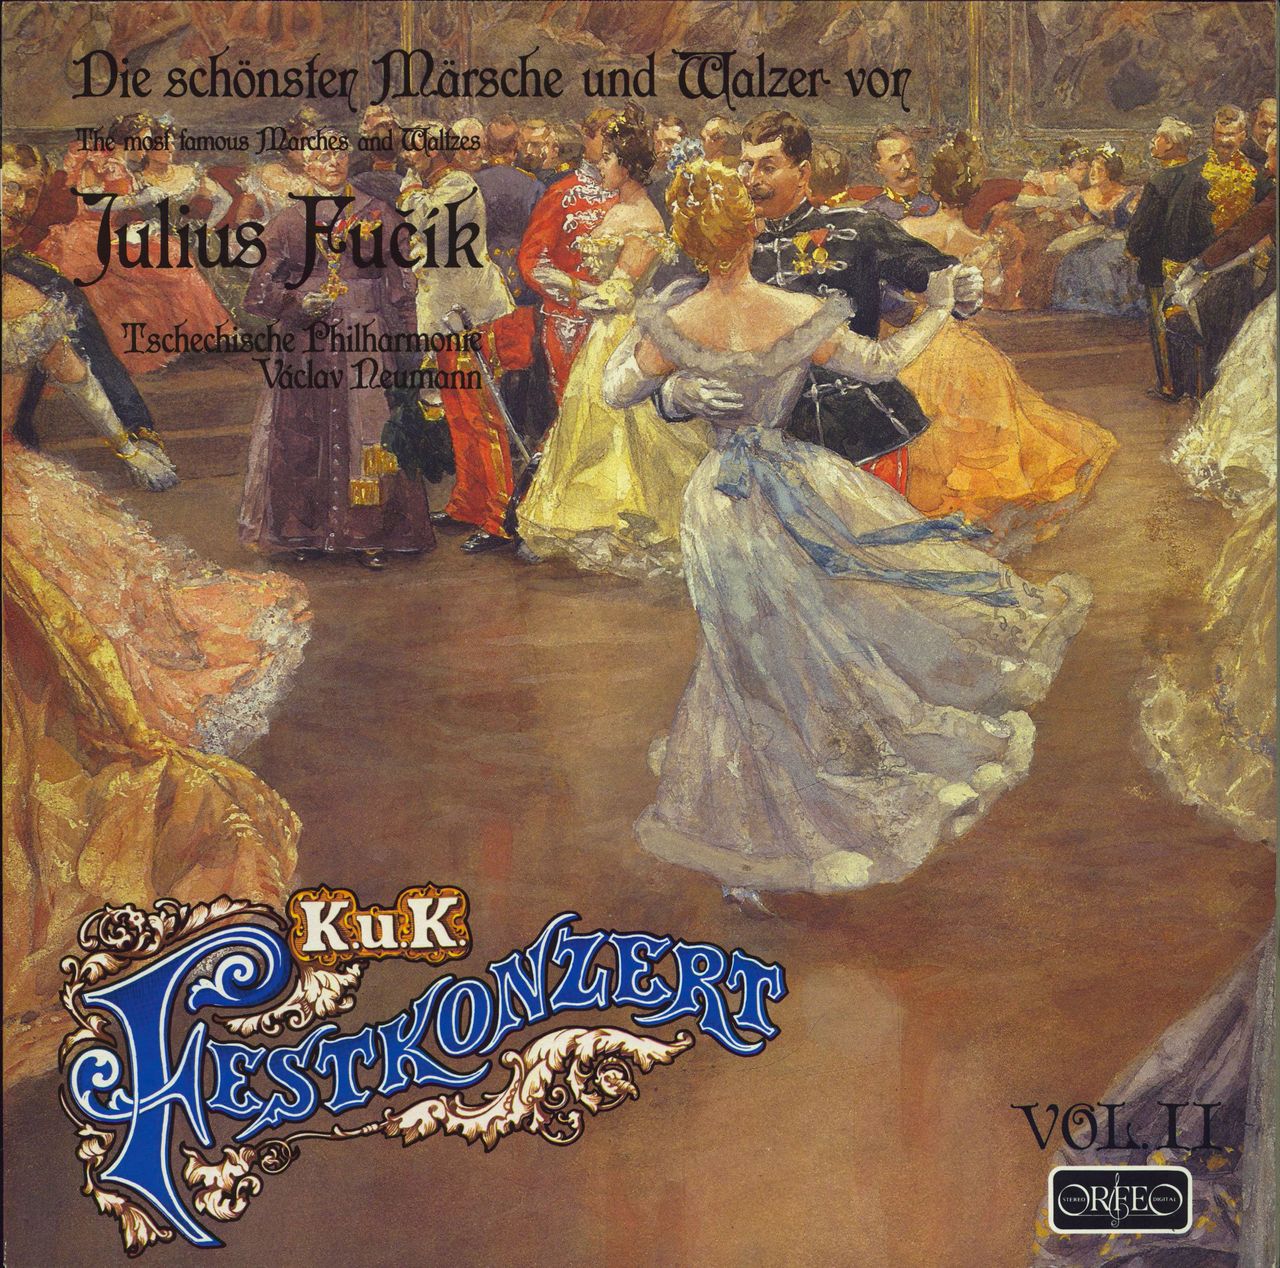 Czech Philharmonic Orchestra Fucik - The Most Famous Marches And Waltzes German vinyl LP album (LP record) S147861B